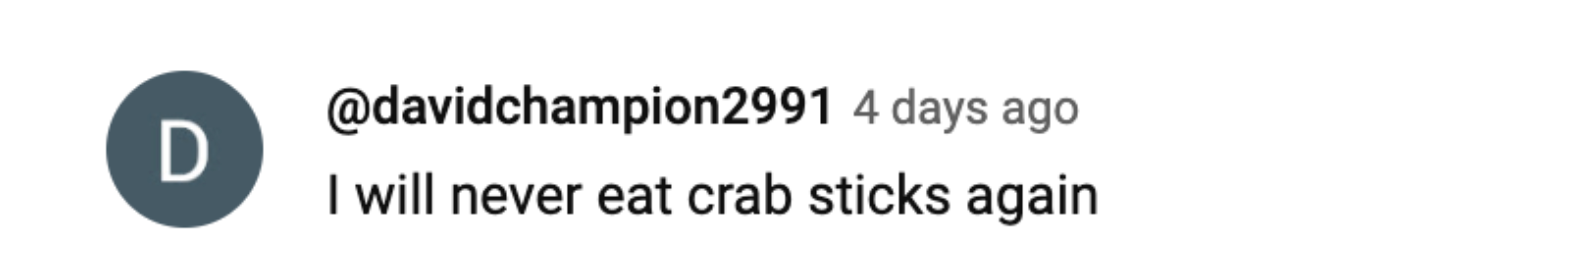 Capture d'écran d'un commentaire d'un spectateur'sur la vidéo de la fabrication des bâtonnets de crabe | Youtube.com/Food Kingdom